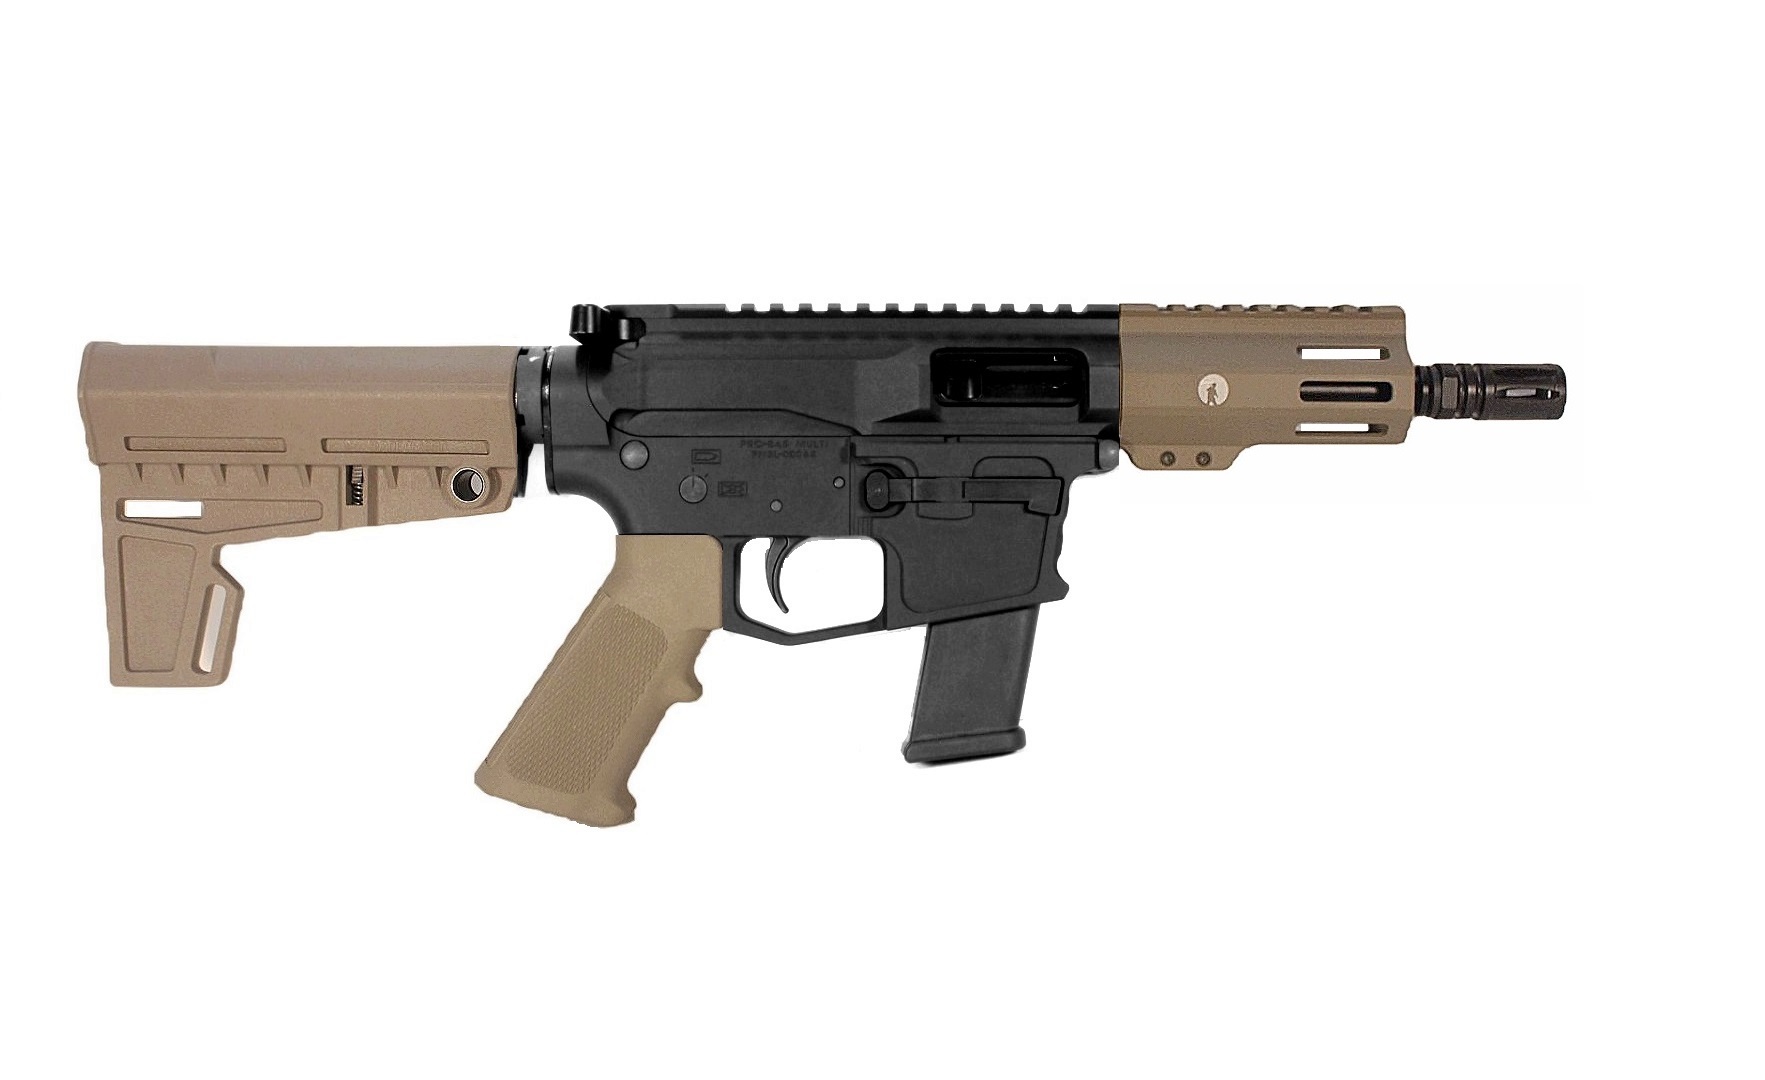 5 inch 9mm AR-15 Pistol in BLK/FDE 2 Tone